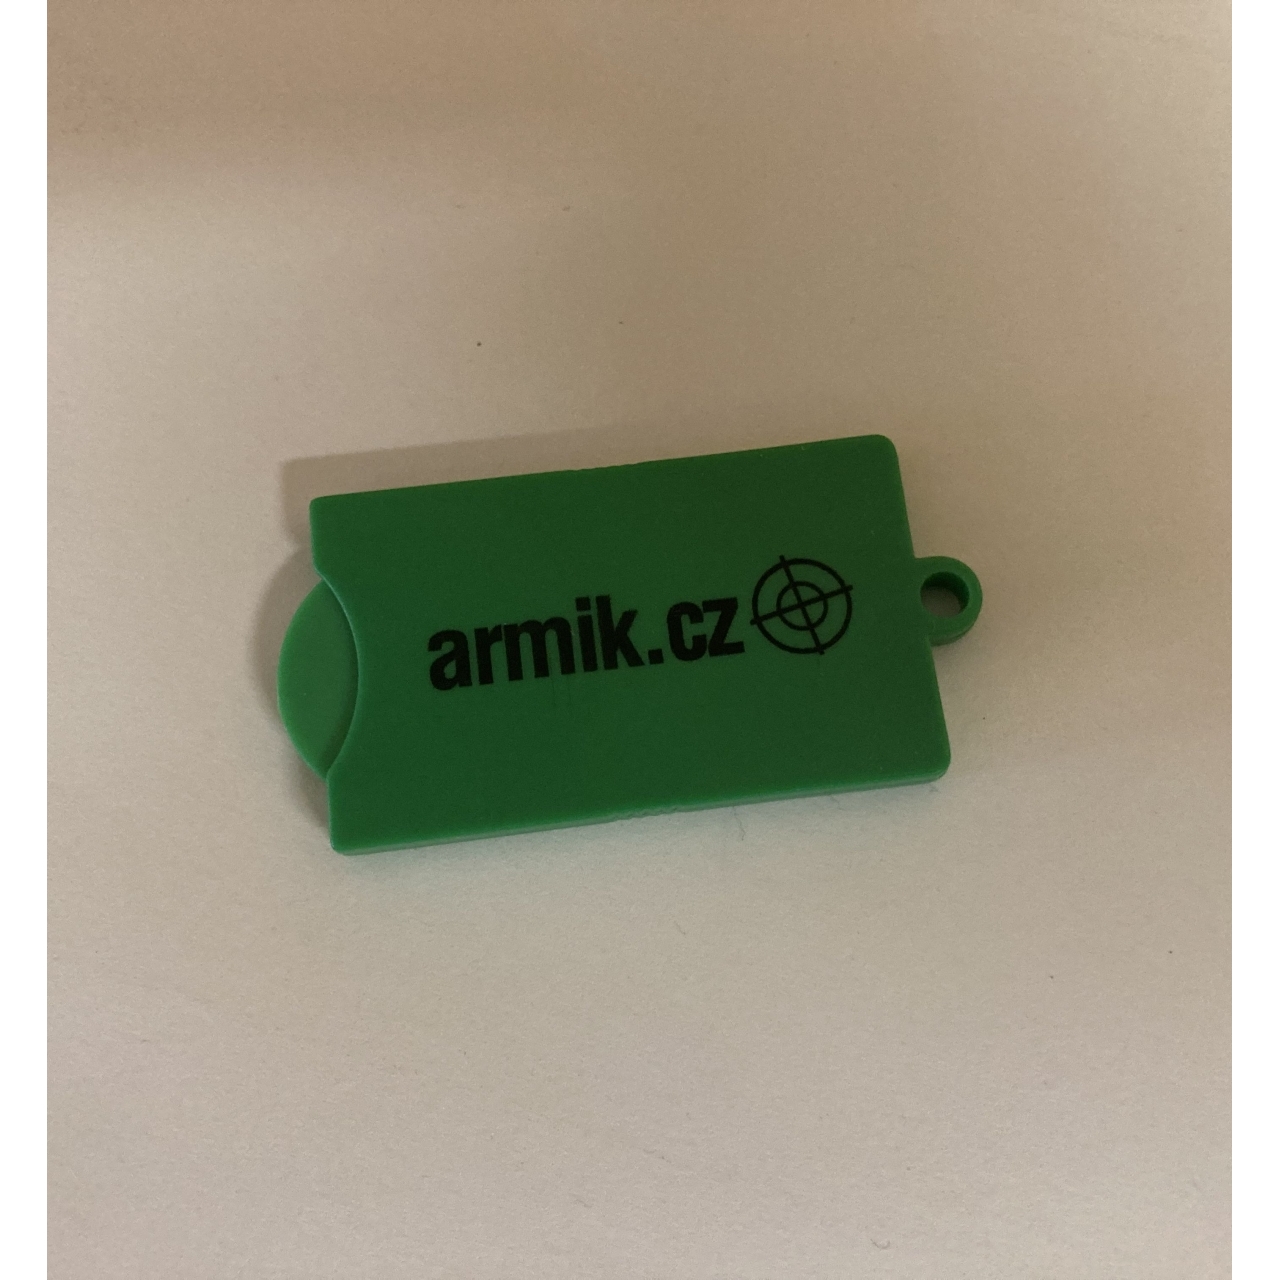 Prívesok na kľúče Armik.cz - zelený